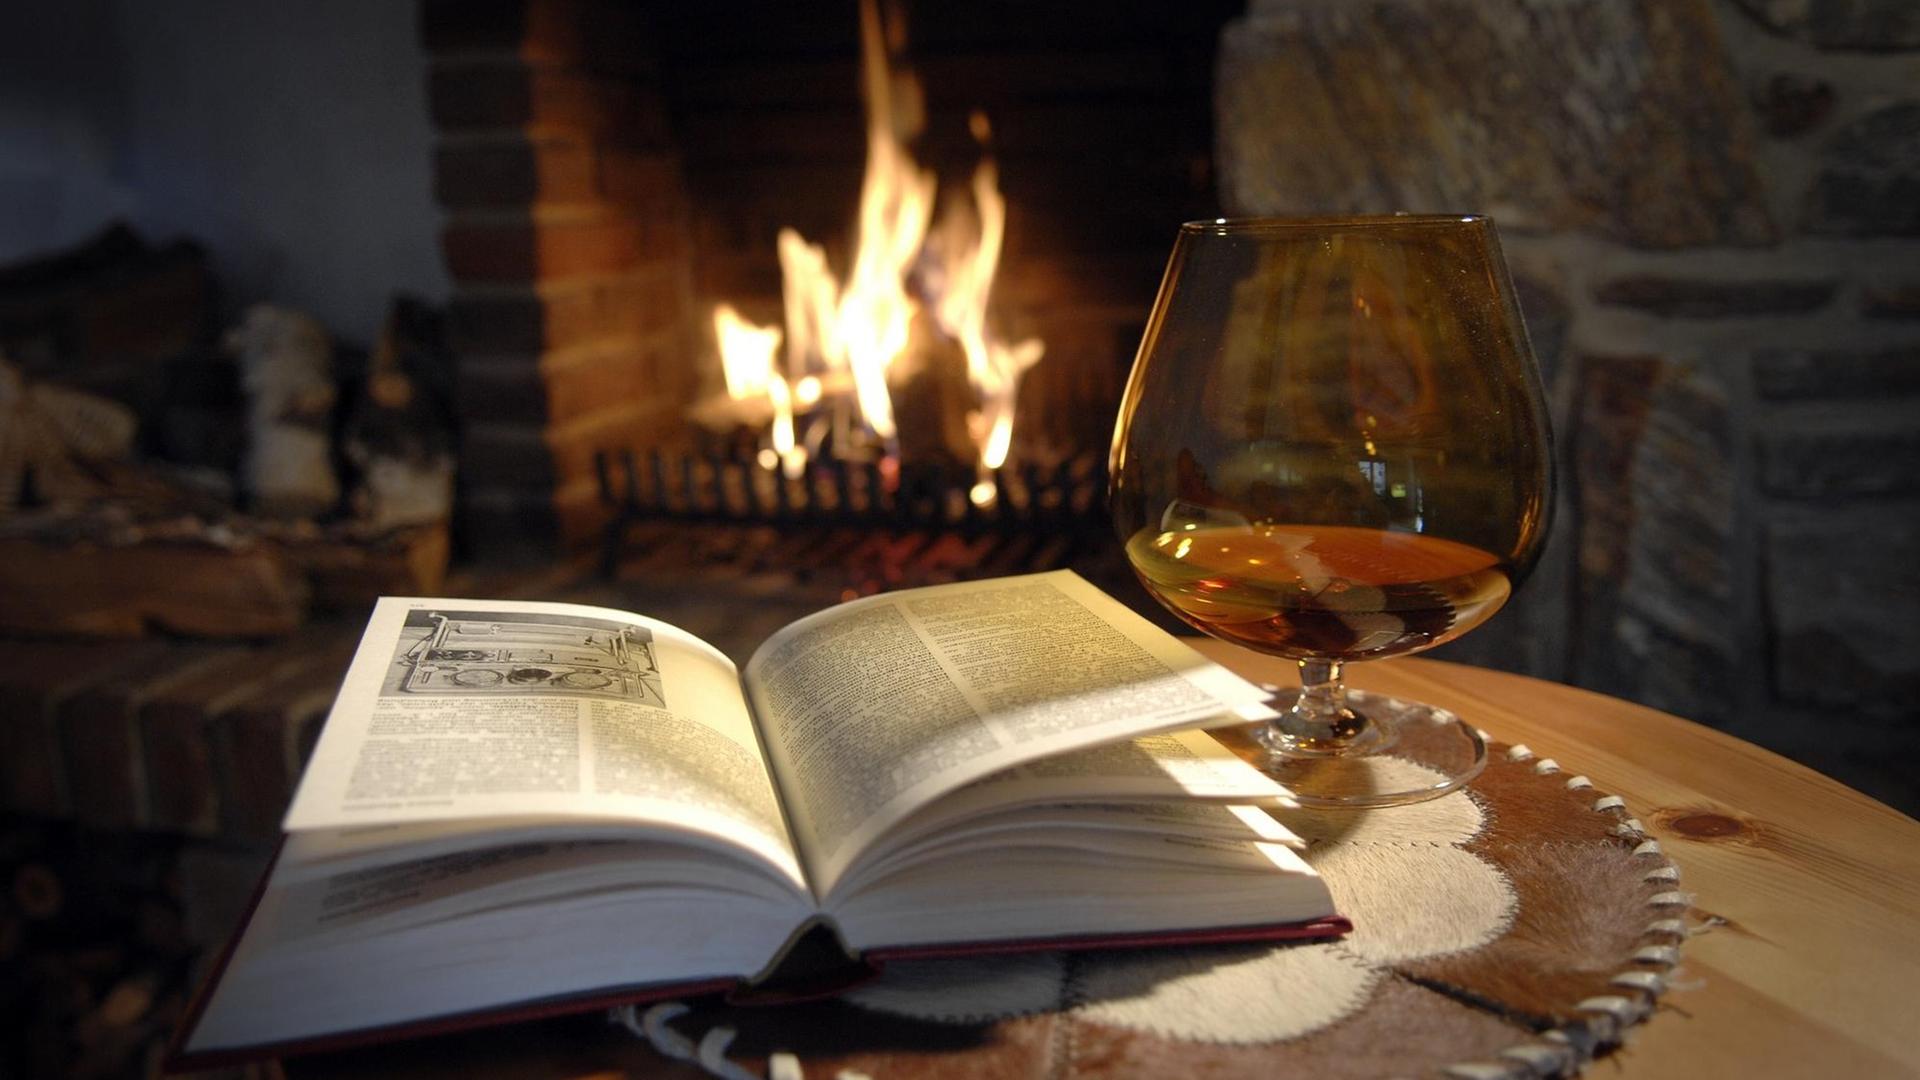 Ein aufgeschlagenes Buch, ein Cognac und im Hintergrund brennt ein Feuer im Kamin.